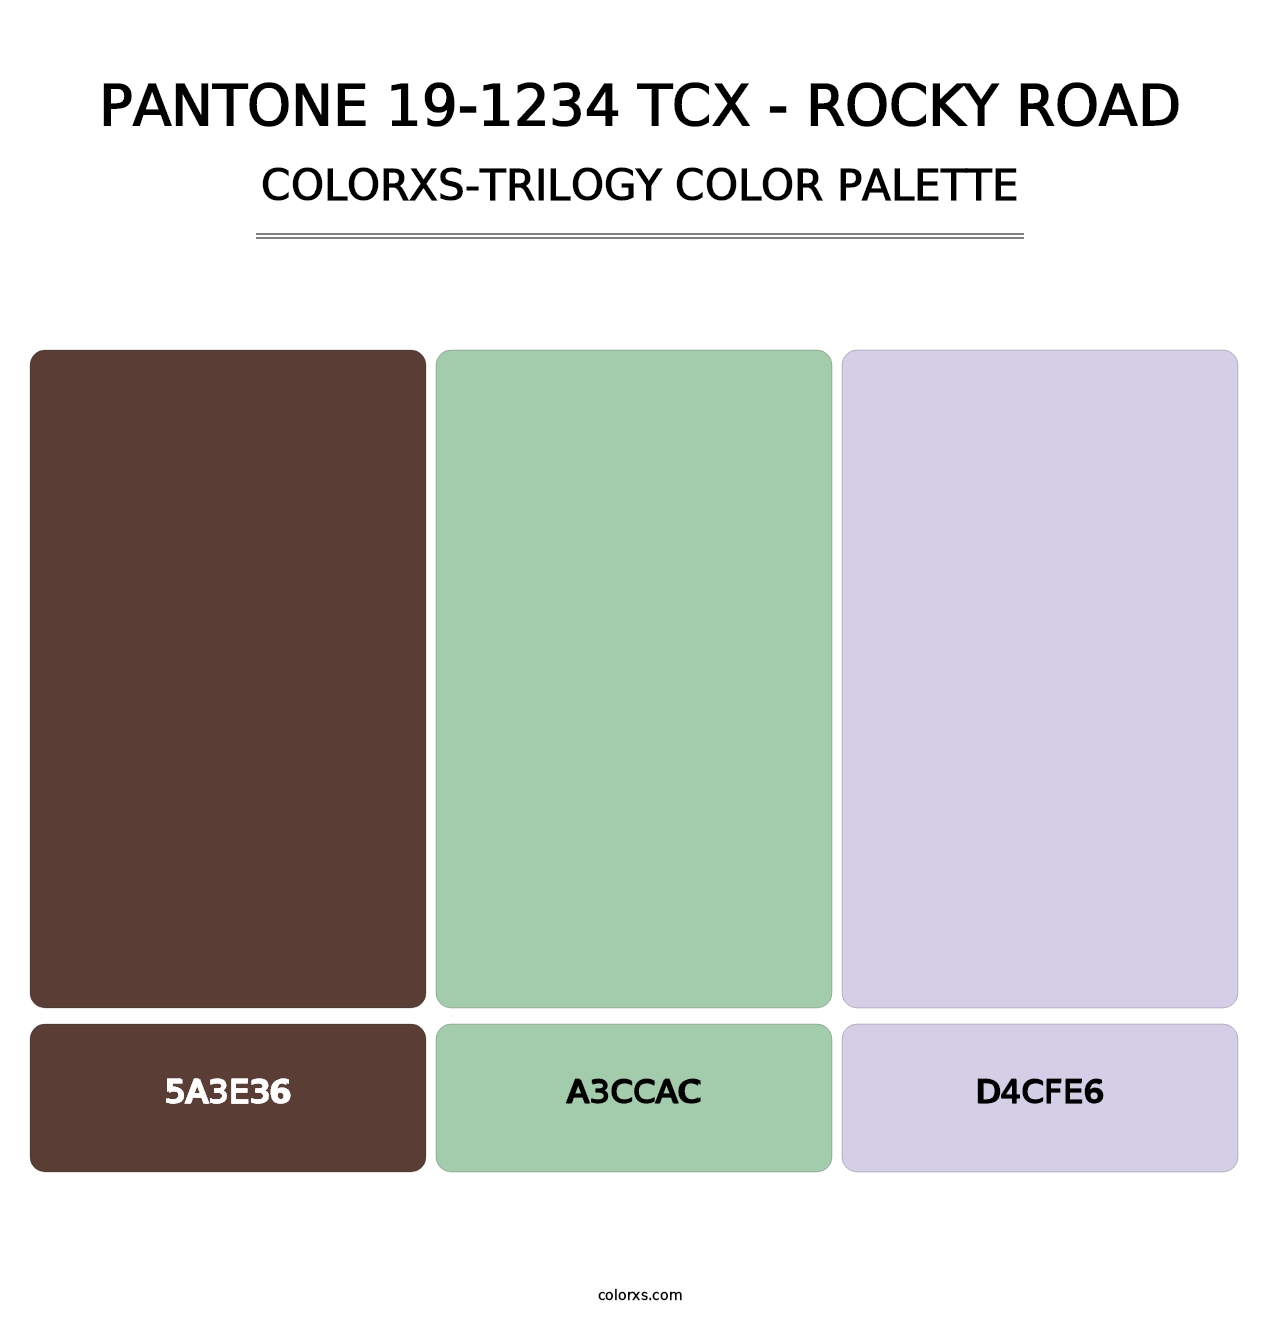 PANTONE 19-1234 TCX - Rocky Road - Colorxs Trilogy Palette